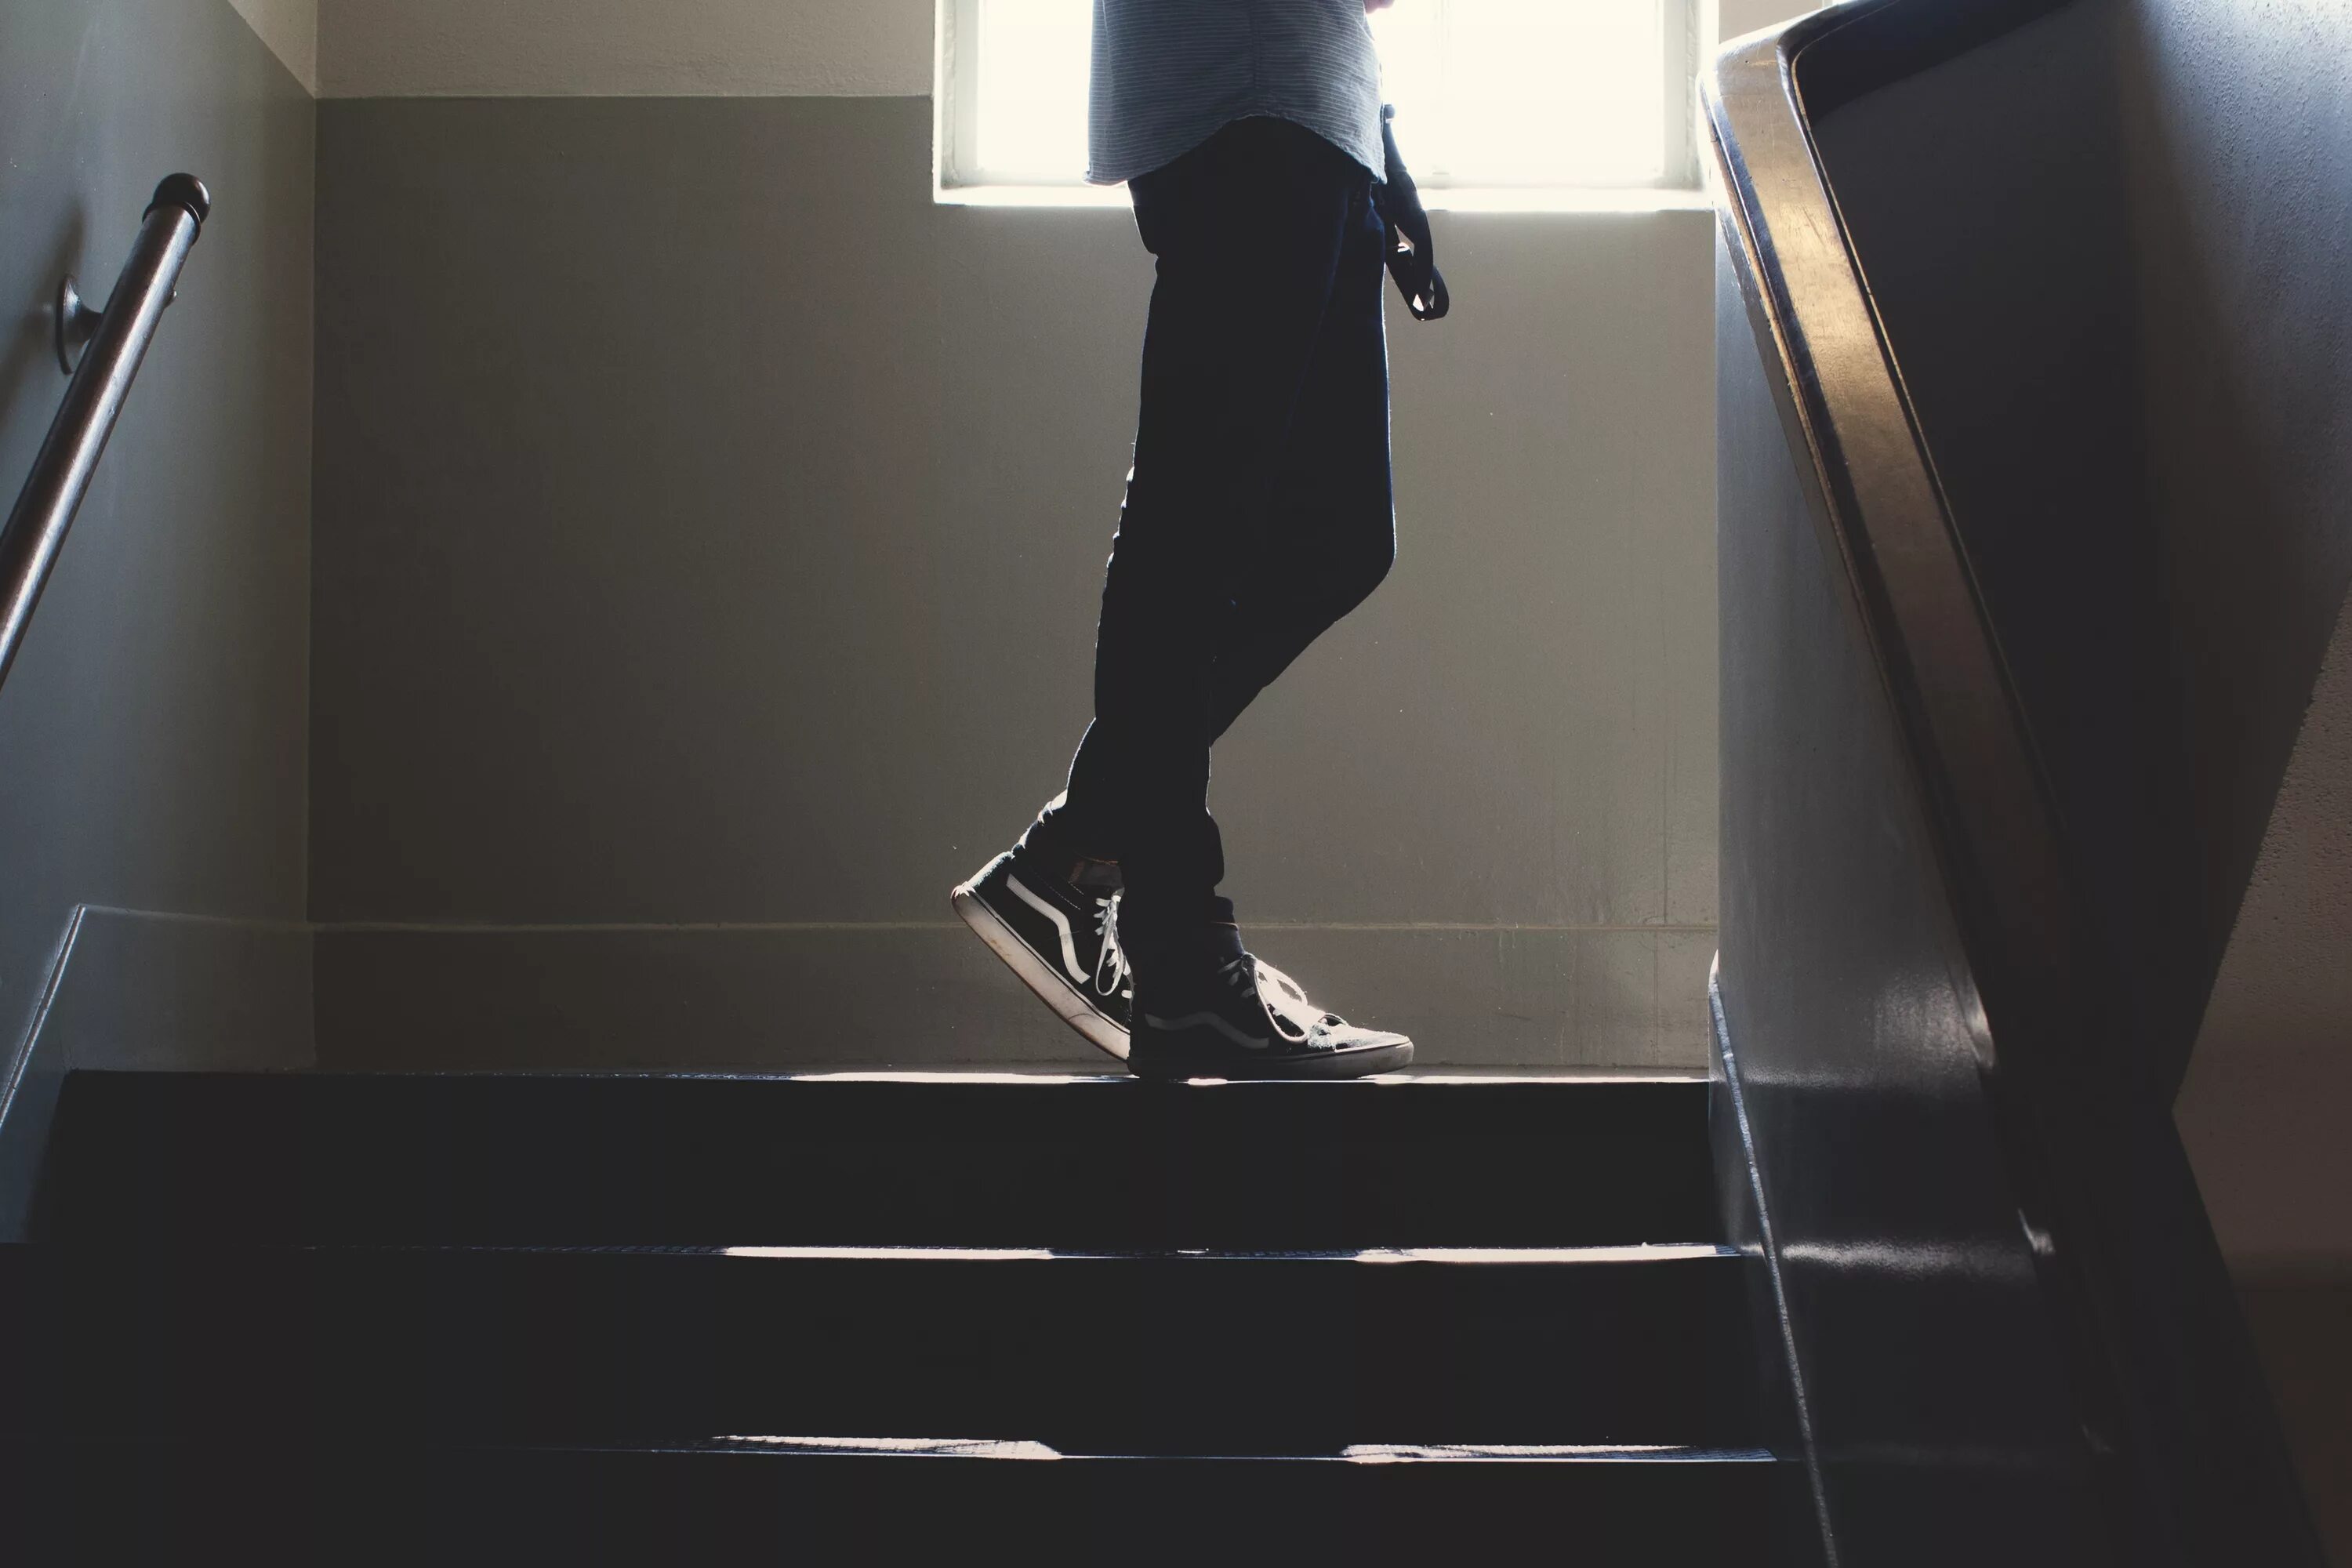 Подниматься спускаться по лестнице. Поднимается по лестнице. Парень на лестнице. Человек поднимается по лестнице. Поднимается по ступенькам.